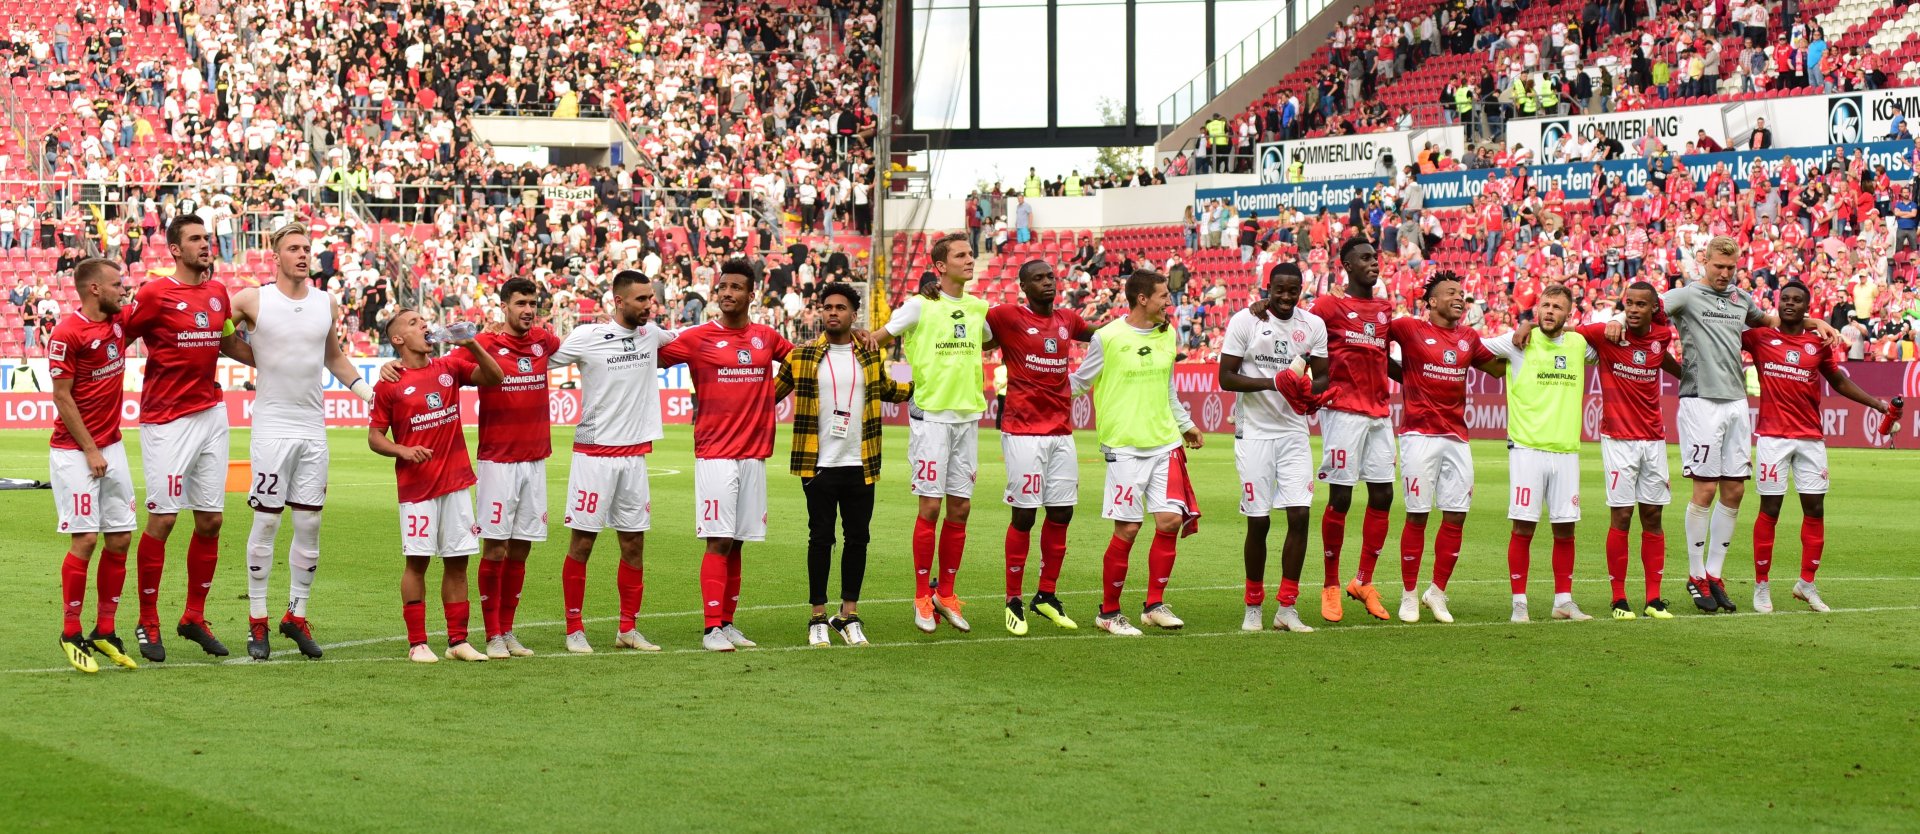 Feierten mit den Fans und ließen sich feiern: Die Profis des FSV Mainz 05 sind zum ersten Mal seit 2013 mit einem Sieg in die Bundesligasaison eingestiegen. Gegner damals wie heute: der VfB Stuttgart. 